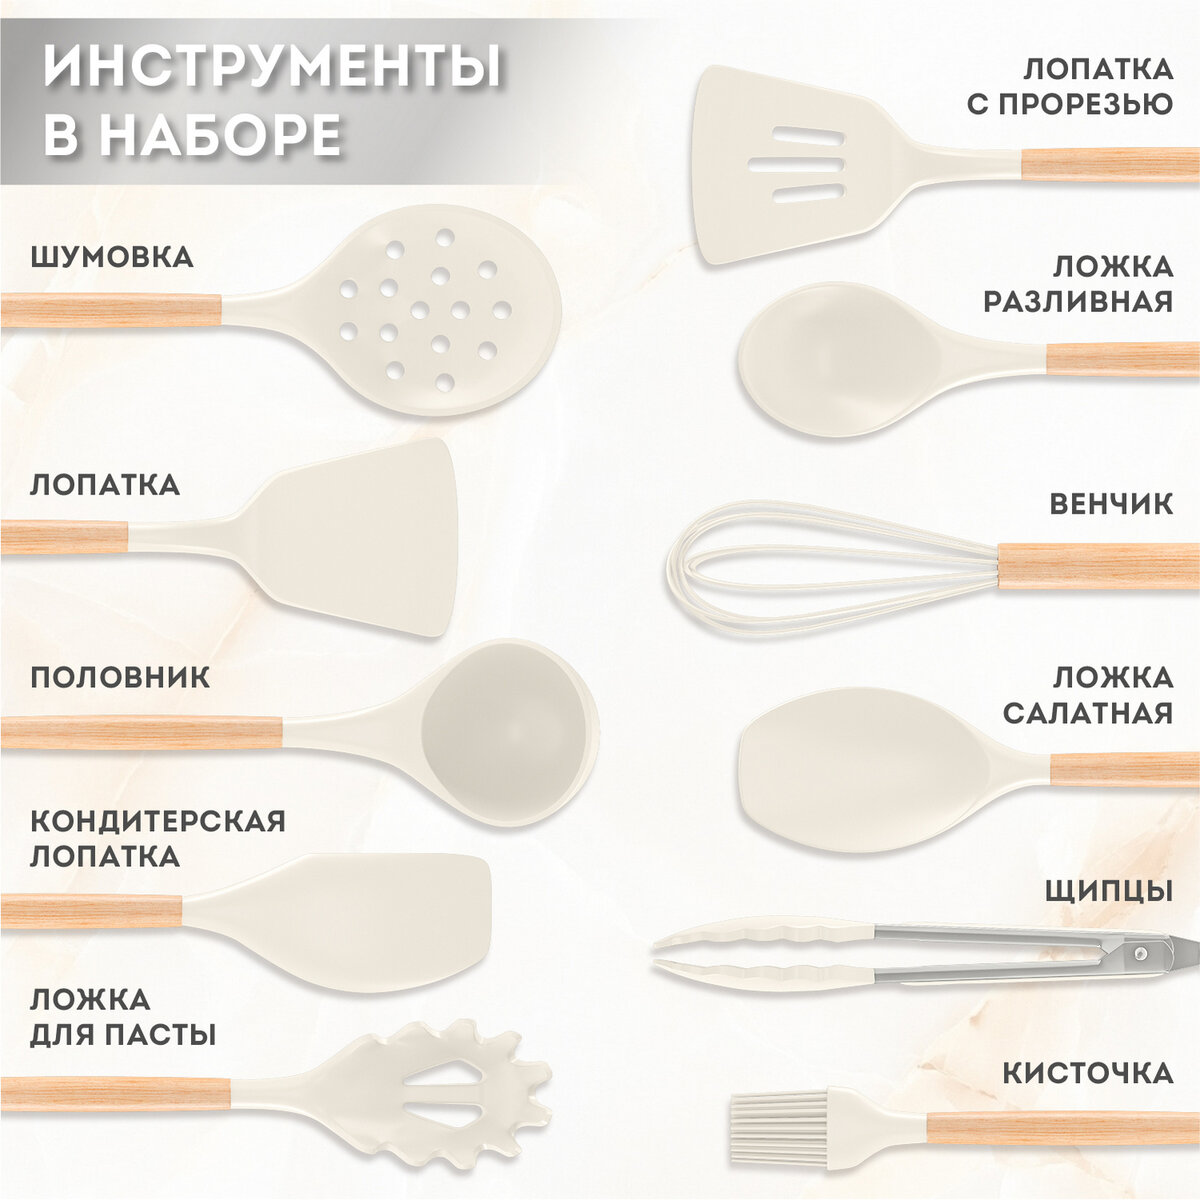 Набор кухонных принадлежностей DASWERK силиконовые с деревянными ручками 12 в 1 - фото 3